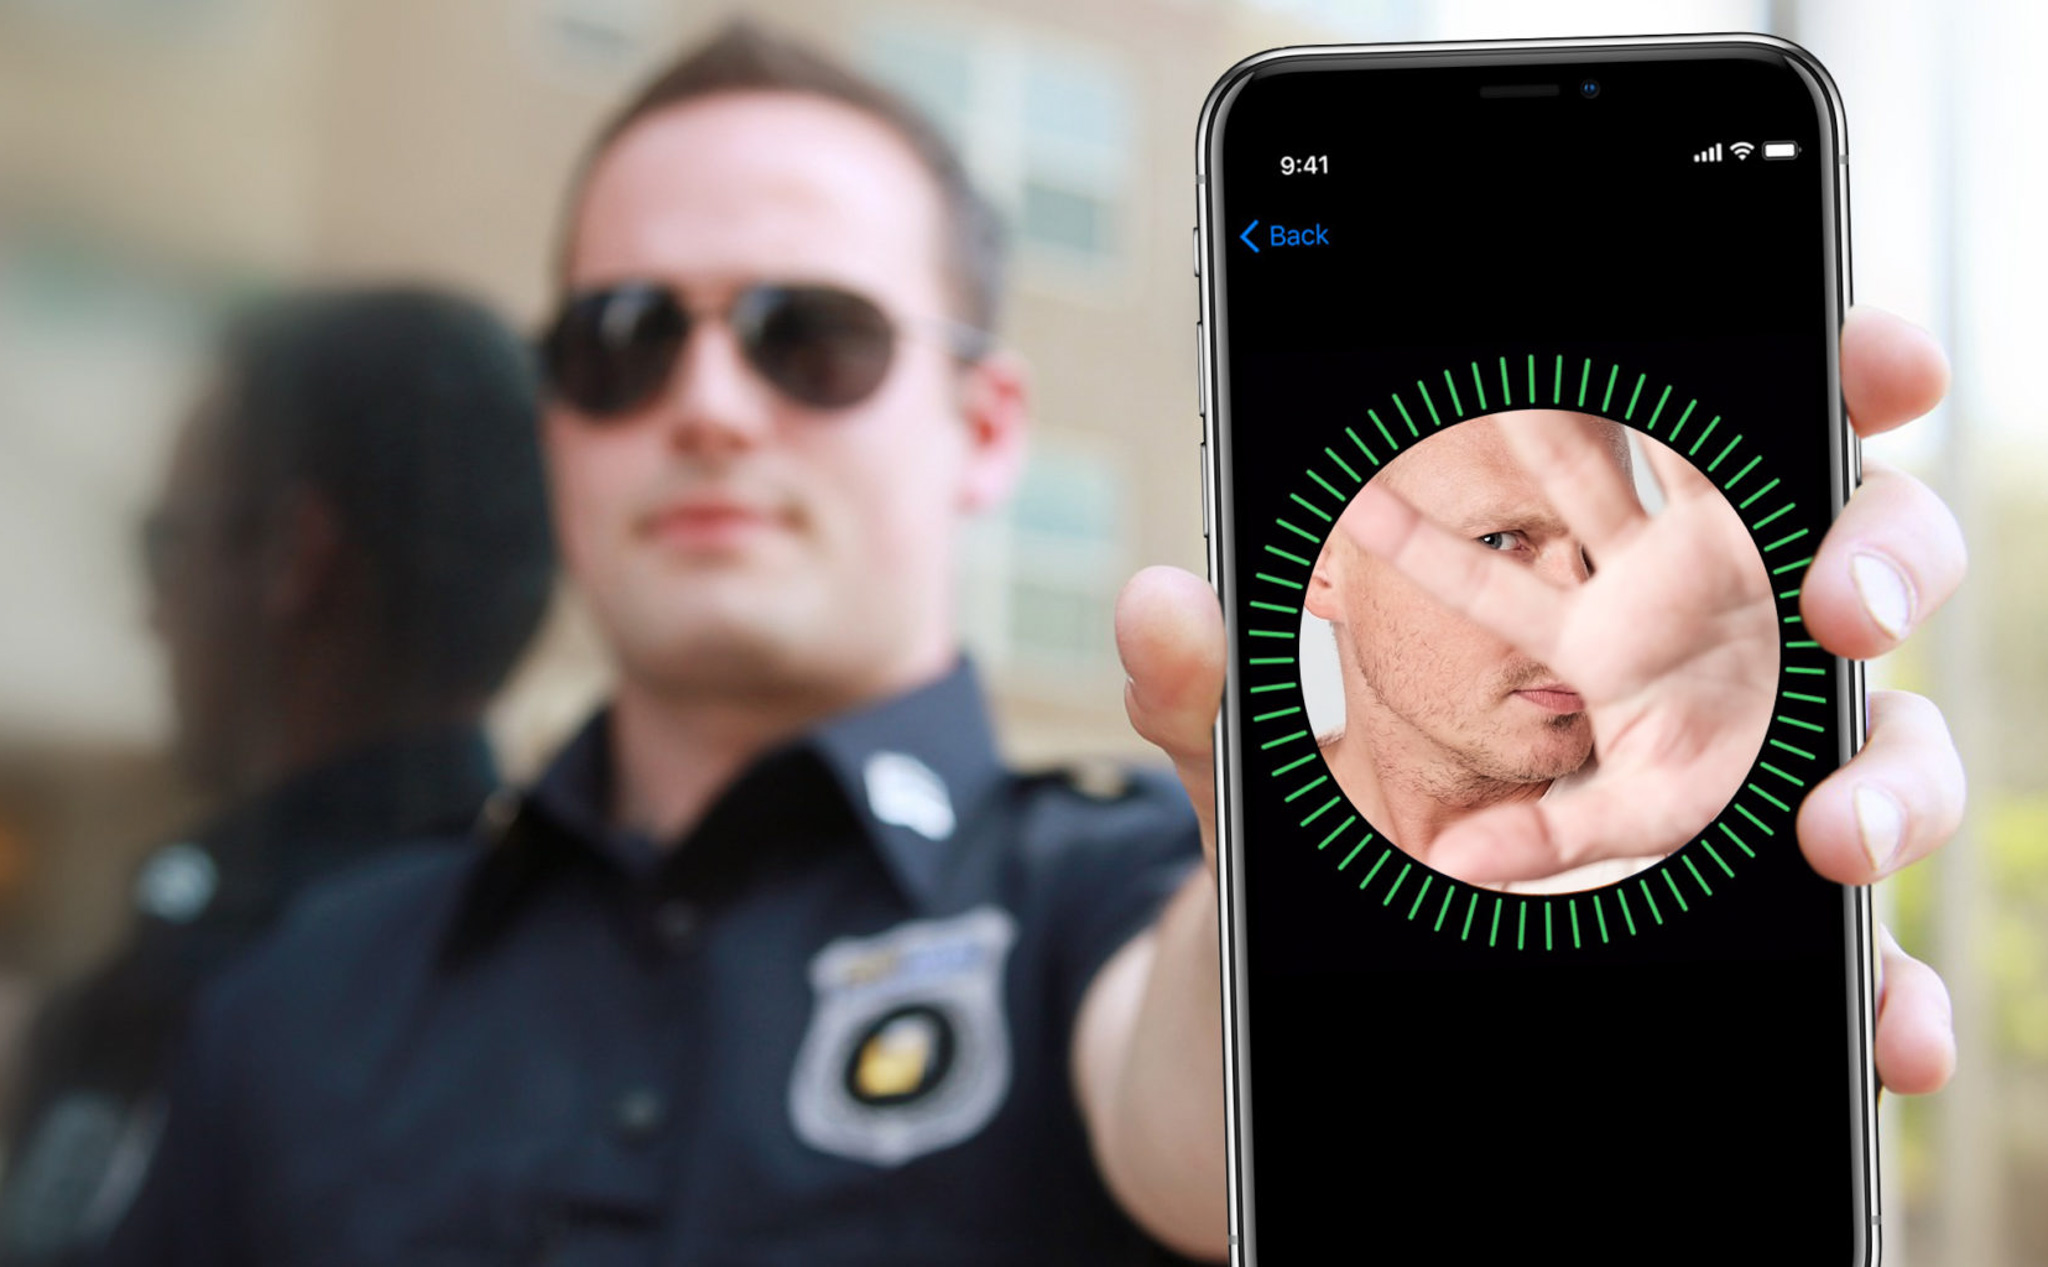 Cảnh sát được khuyên không nên nhìn vào iPhone X của tội phạm để tránh bị khoá máy